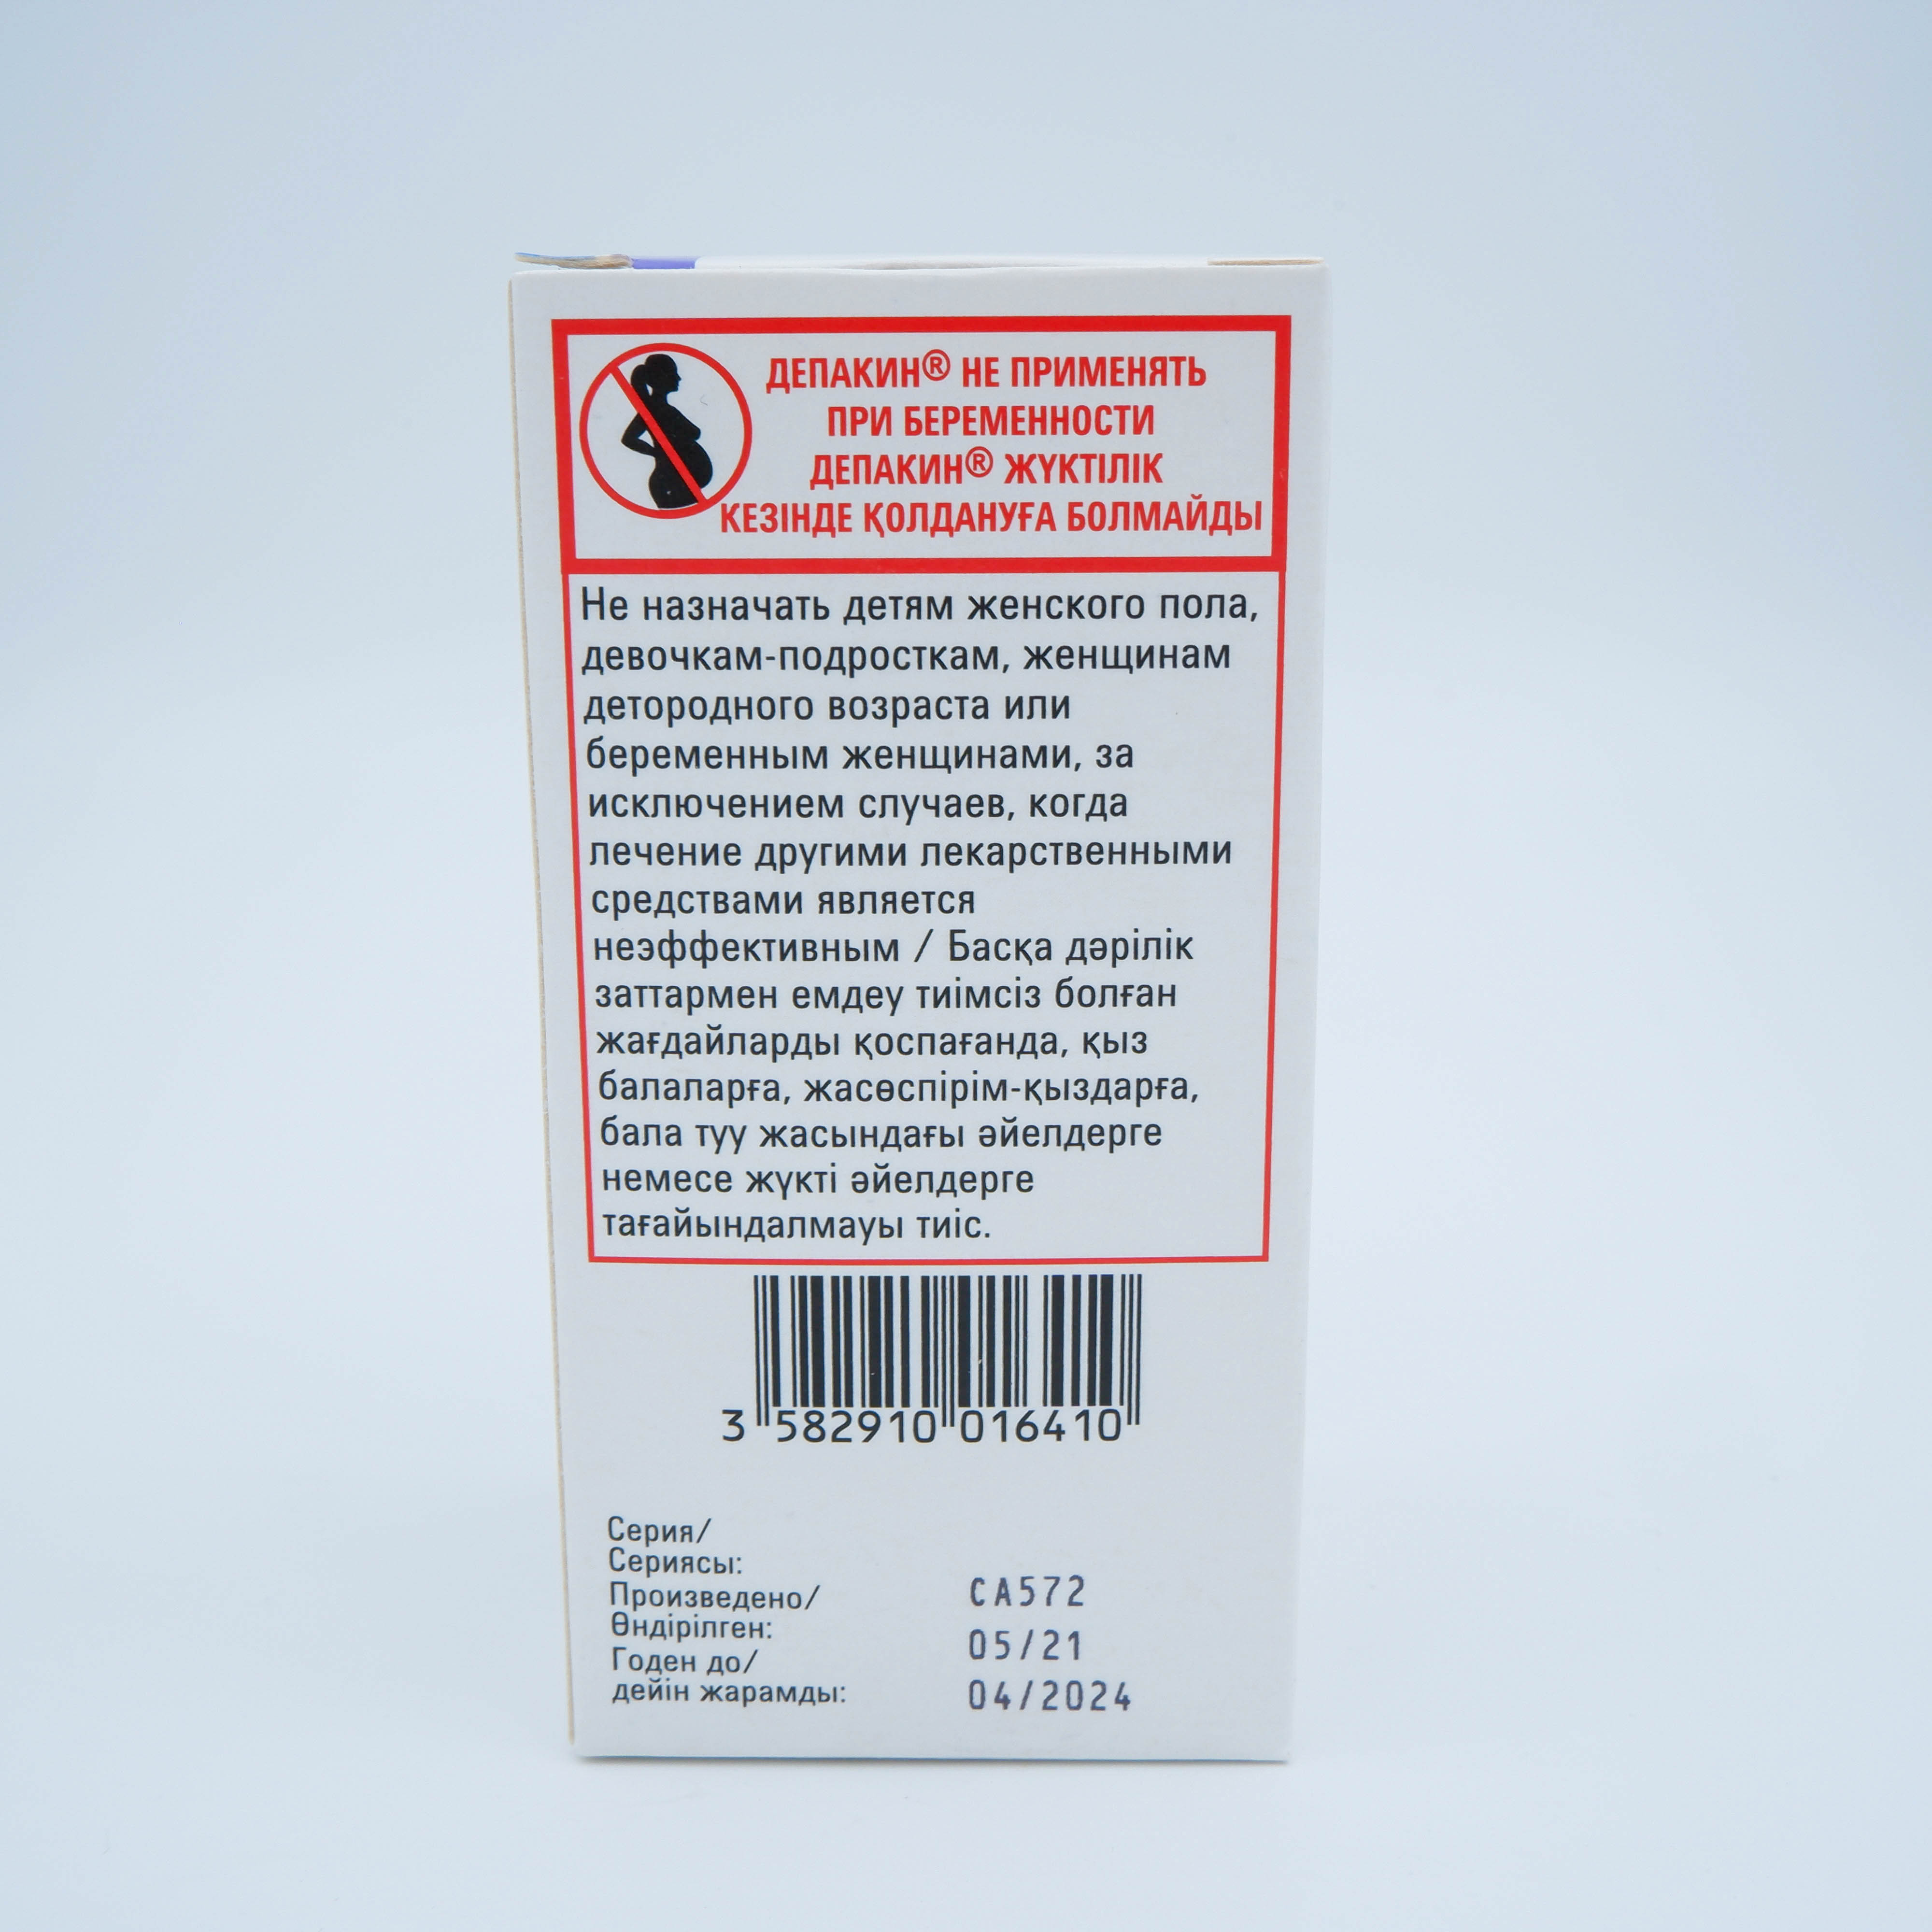 Депакин энтерик 300 таблетки покрытые оболочкой кишечно-растворимой 300 мг №100